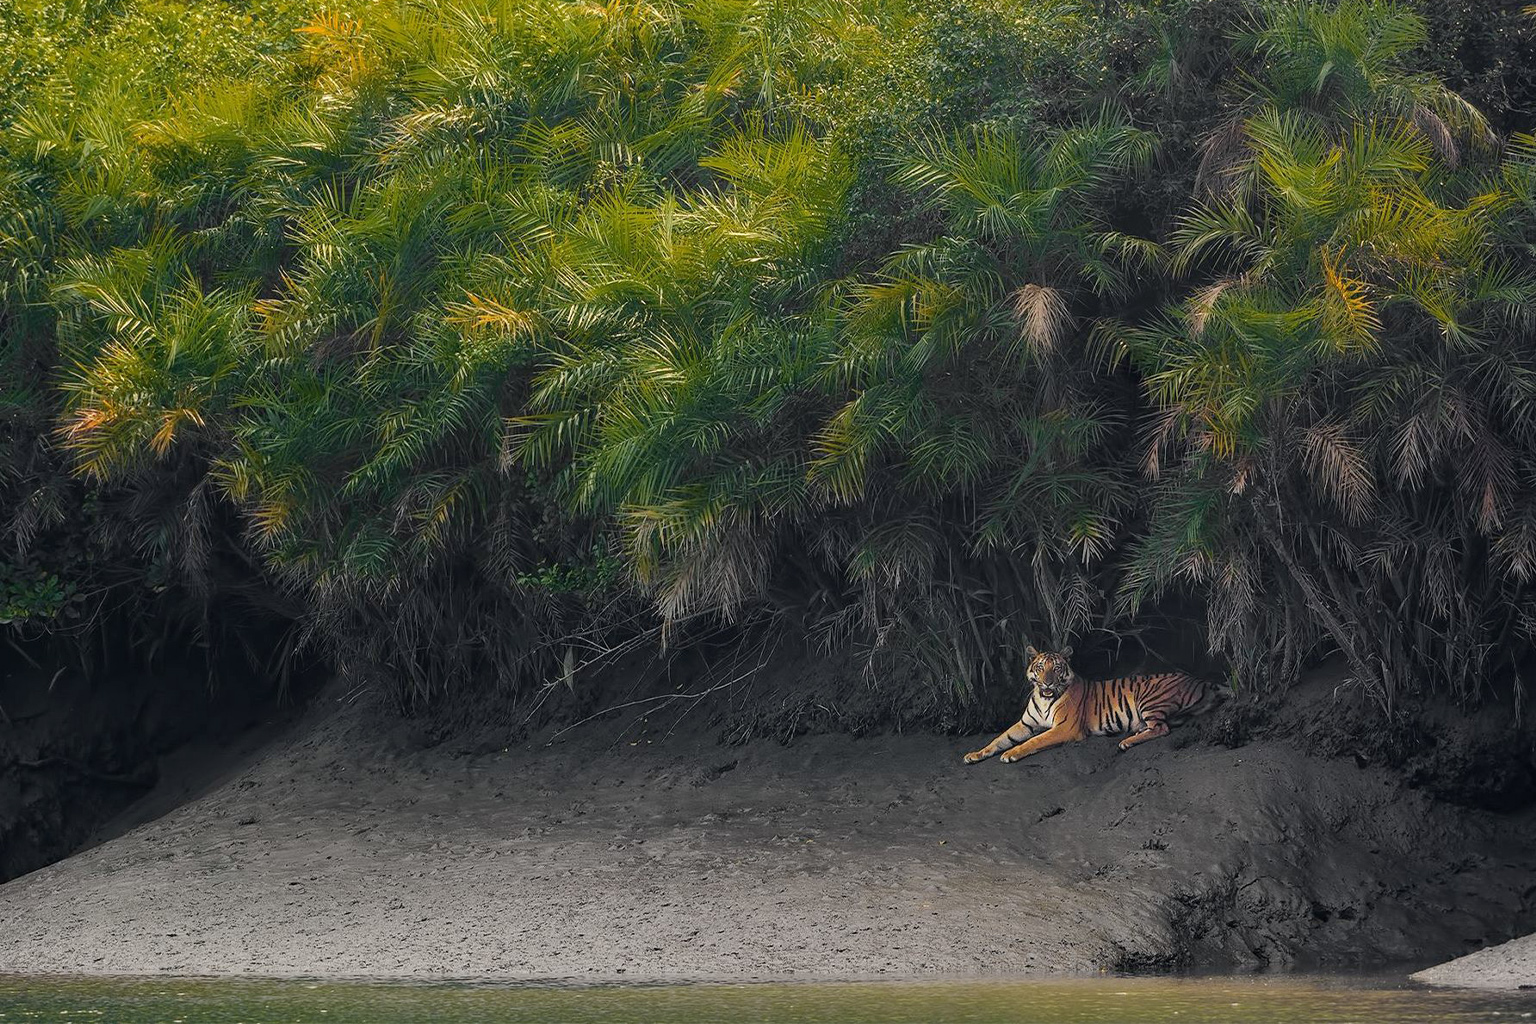 Tiger in the Sundarbans.